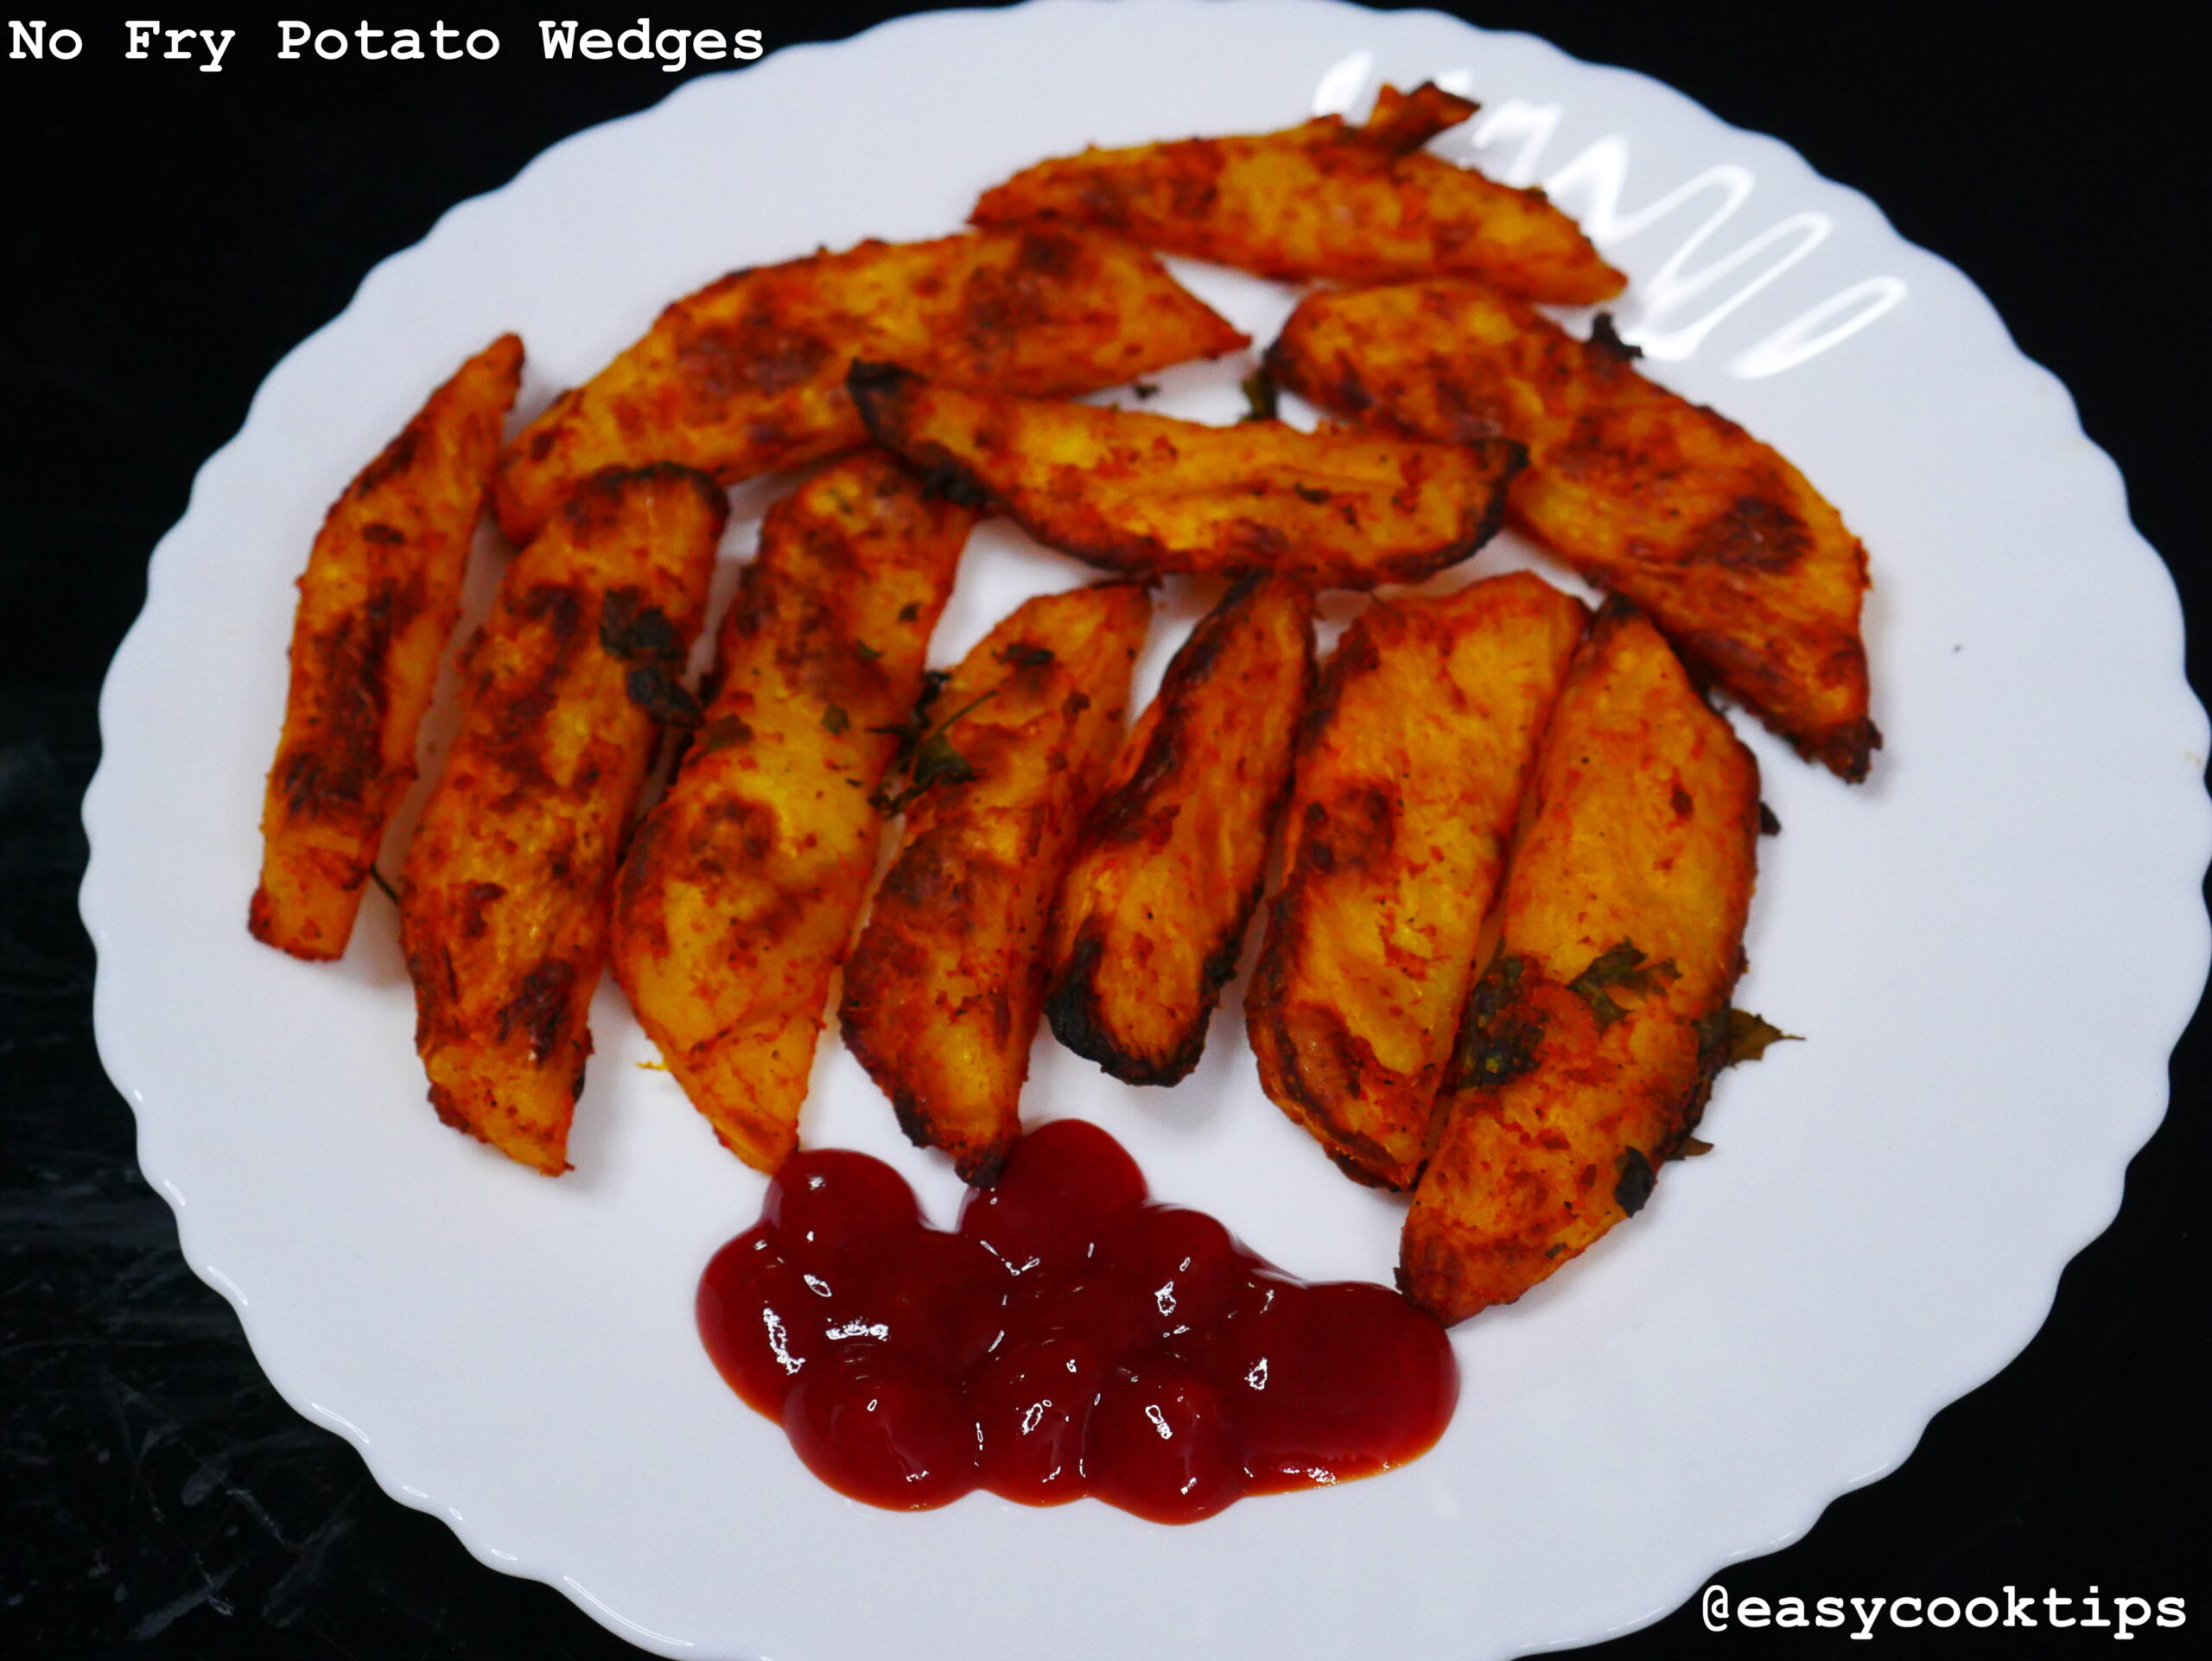 Potato Wedges Recipe | No Fry Potato Wedges Recipe | Oven Baked Potato Wedges Recipe